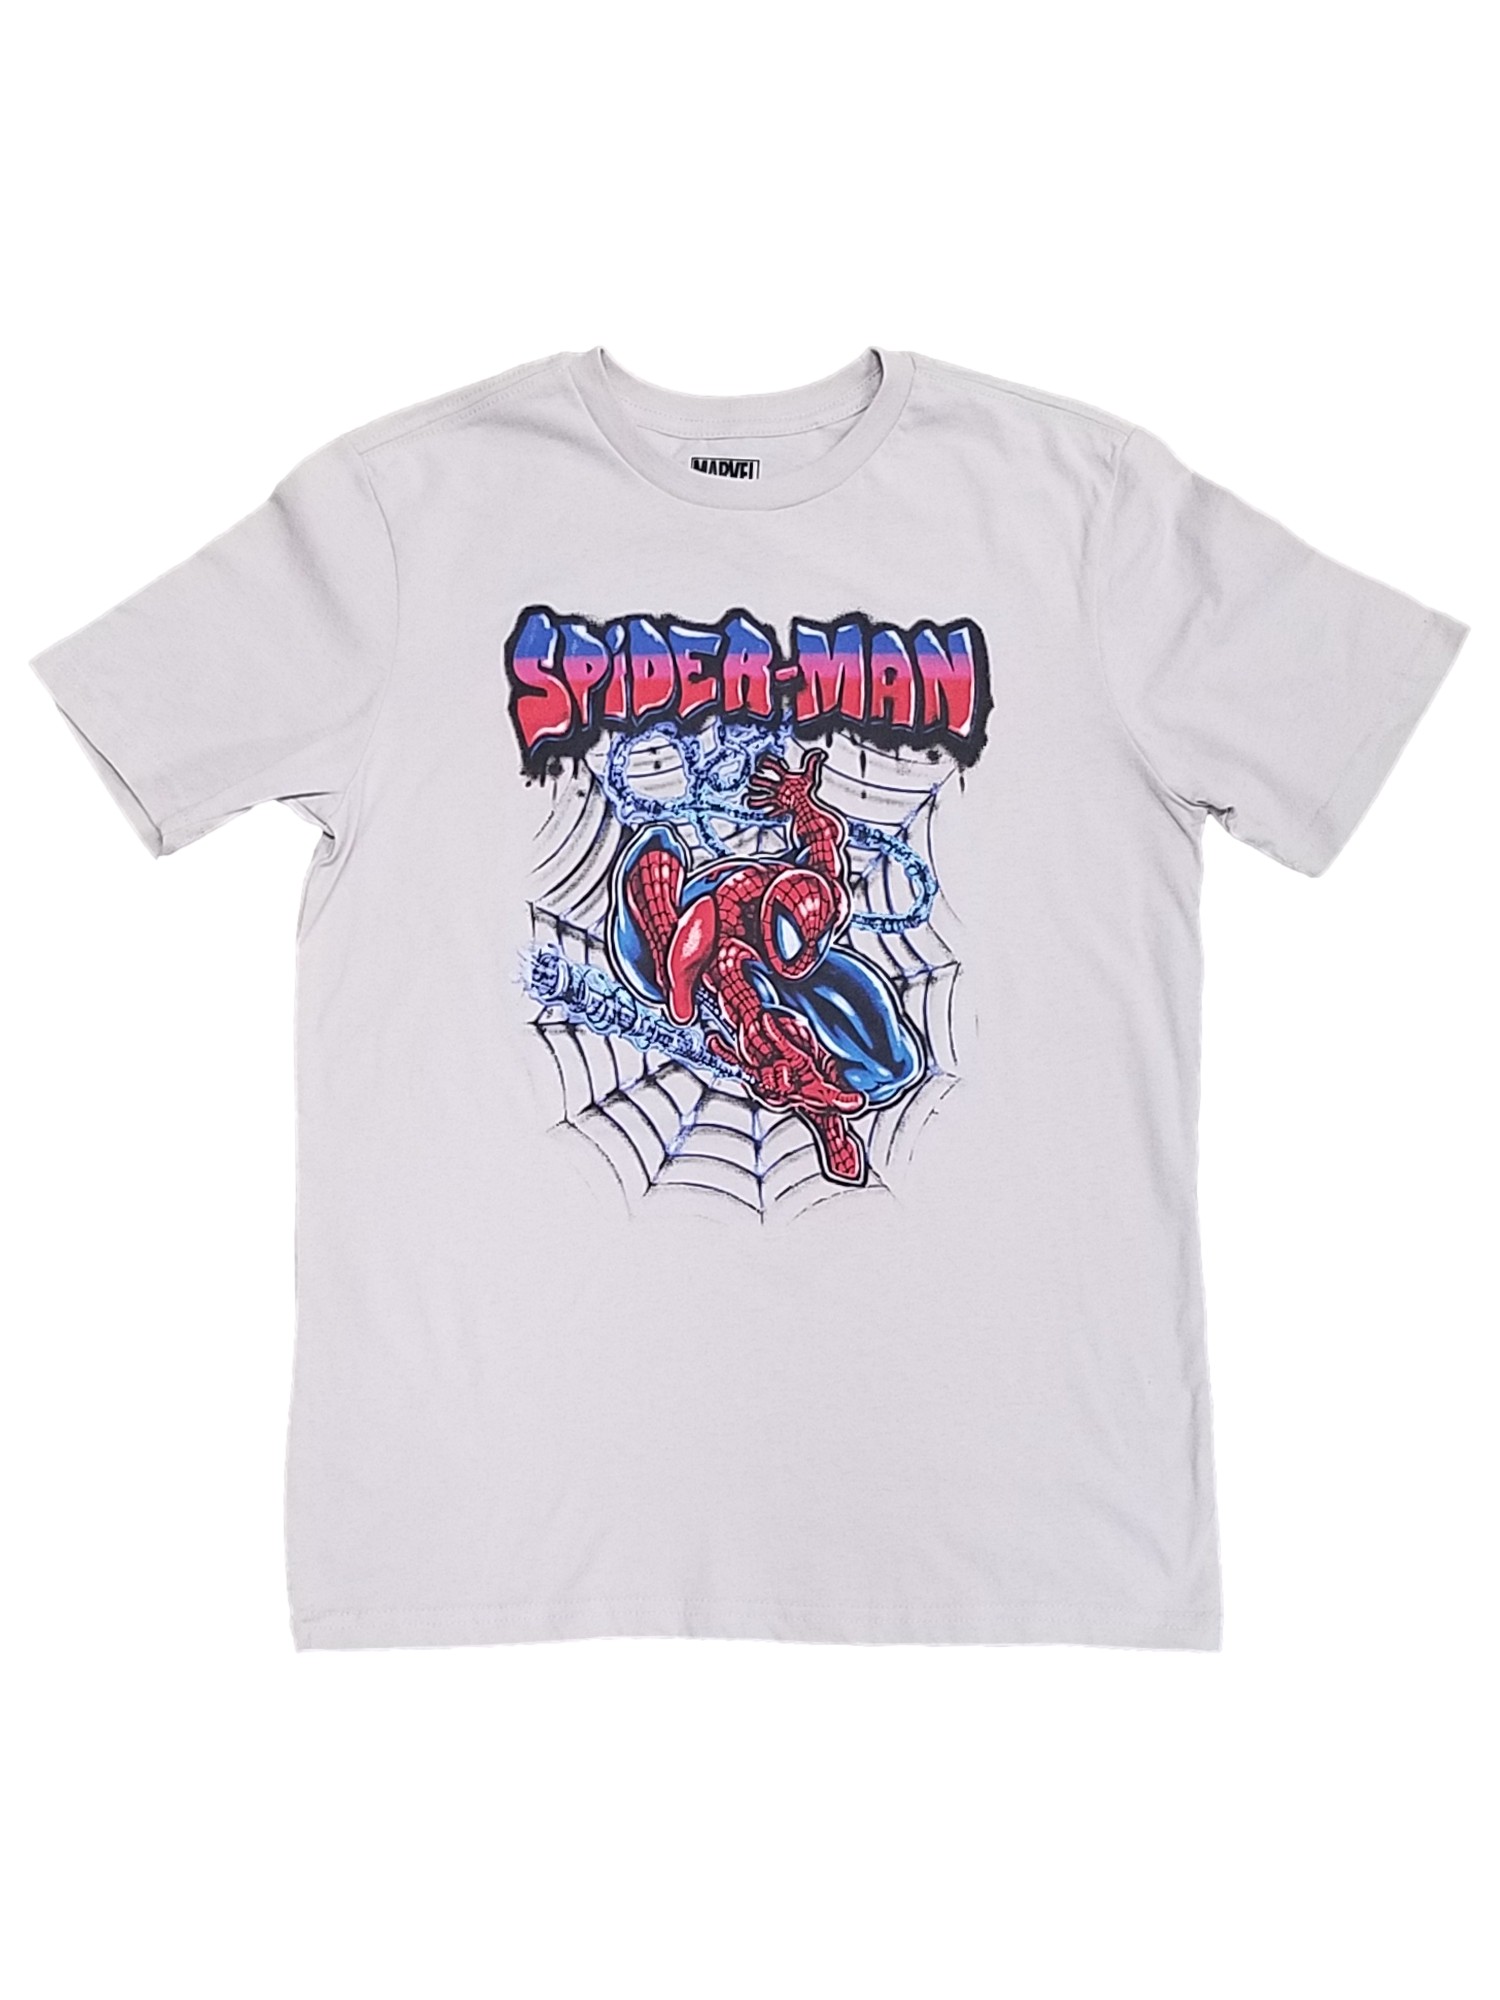 Marvel Boys Gray Short Sleeved Spiderman T-Shirt Tee Shirt Medium 8